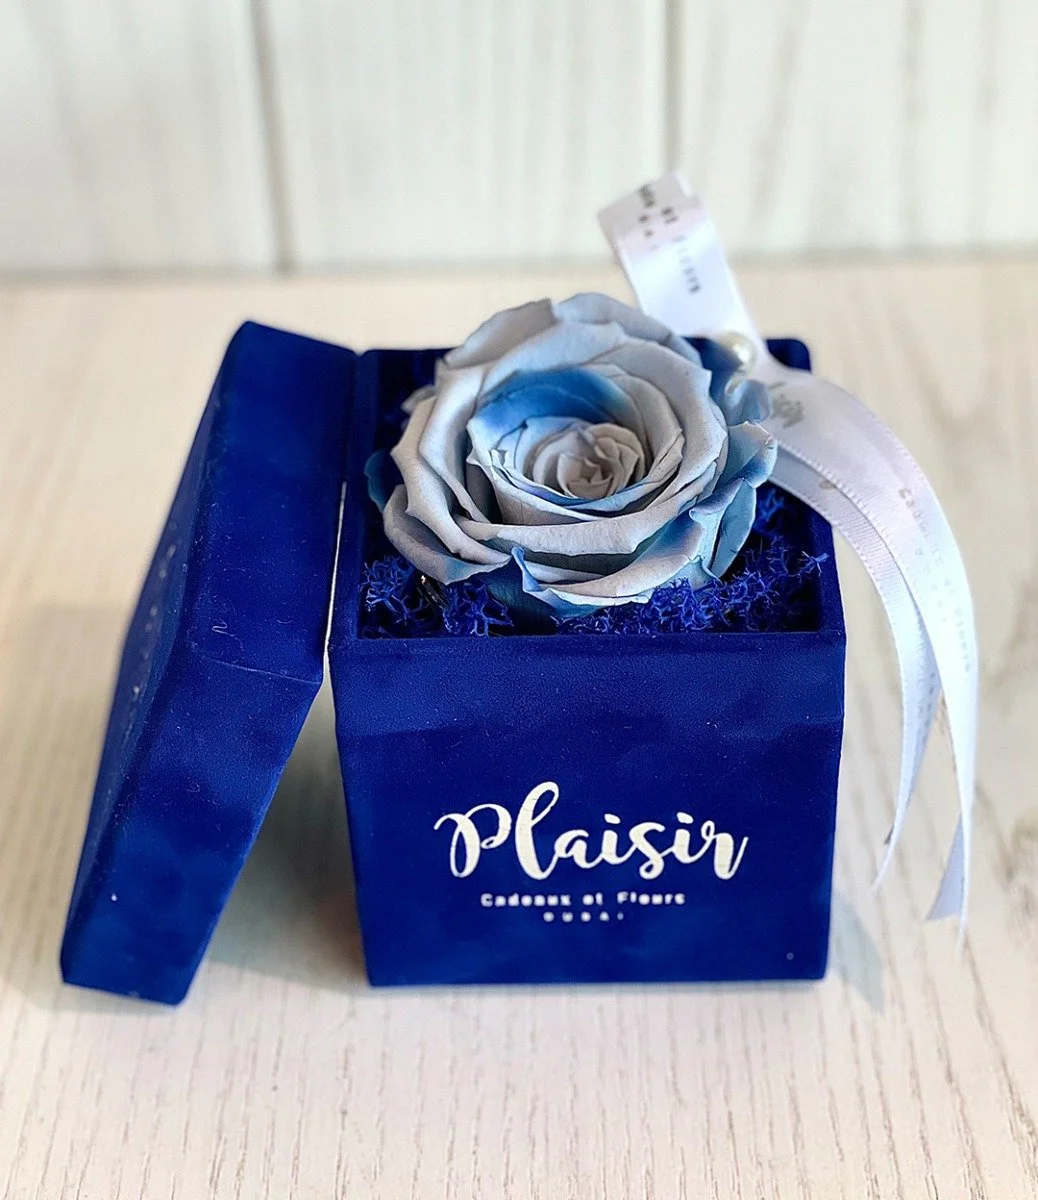 وردة إنفينيتي زرقاء متعددة الألوان في صندوق أزرق ملكي من بليزير